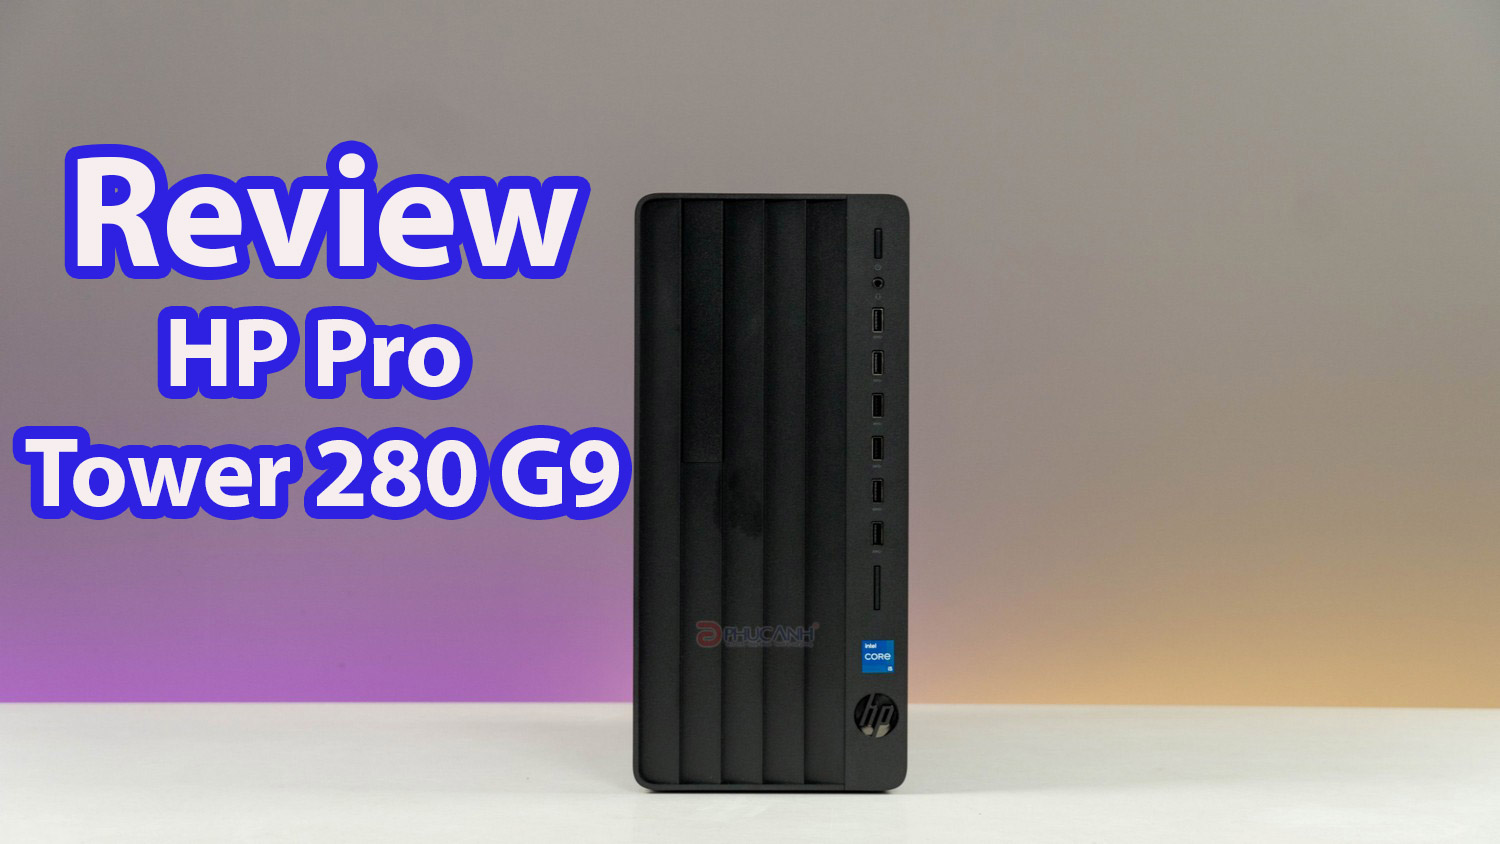 Đánh giá HP Pro Tower 280 G9 - Hiệu năng ấn tượng cho doanh nghiệp cùng công nghệ hiện đại từ CPU Intel thế hệ 12